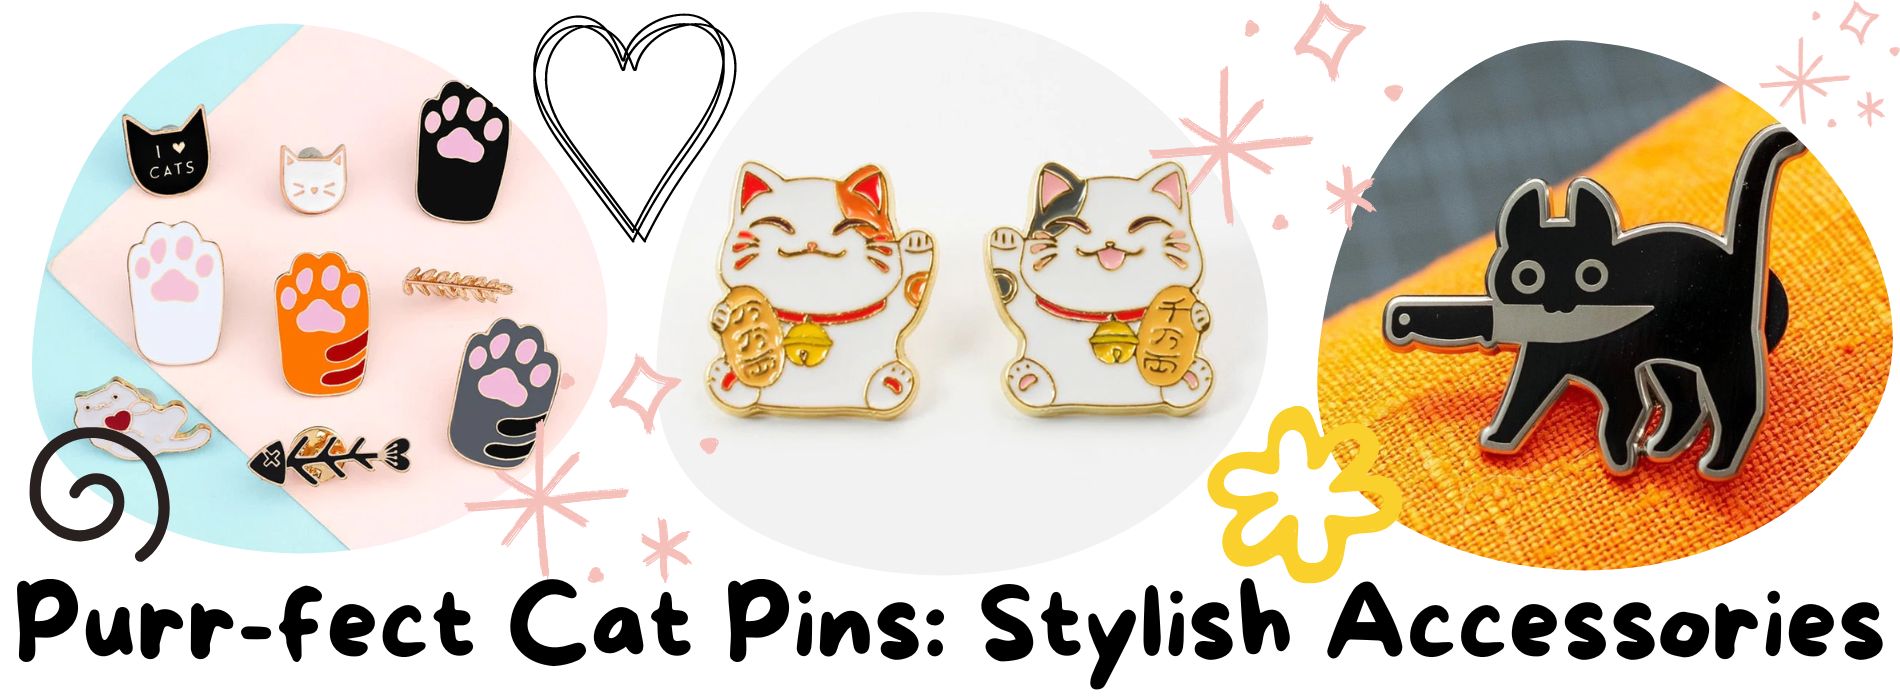 cat-pins